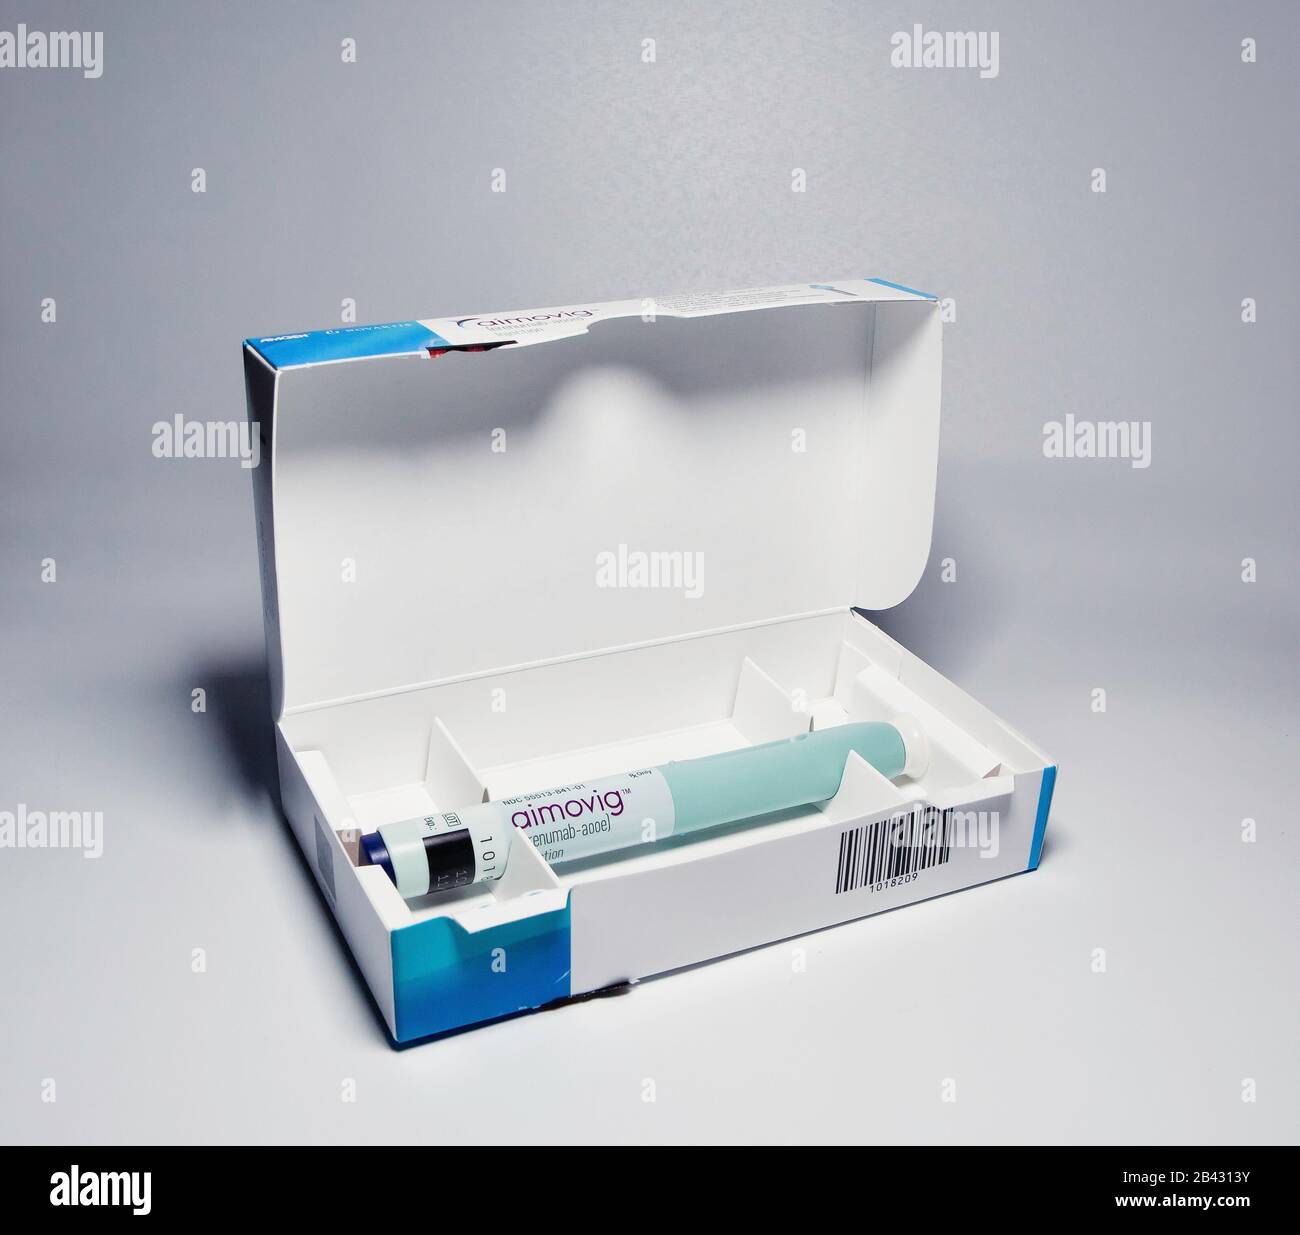 Aimovig (erenumab-aooe) 70 mg auto-injector device in box, prescription drug for migraine prevention, studio, color, United States Stock Photo